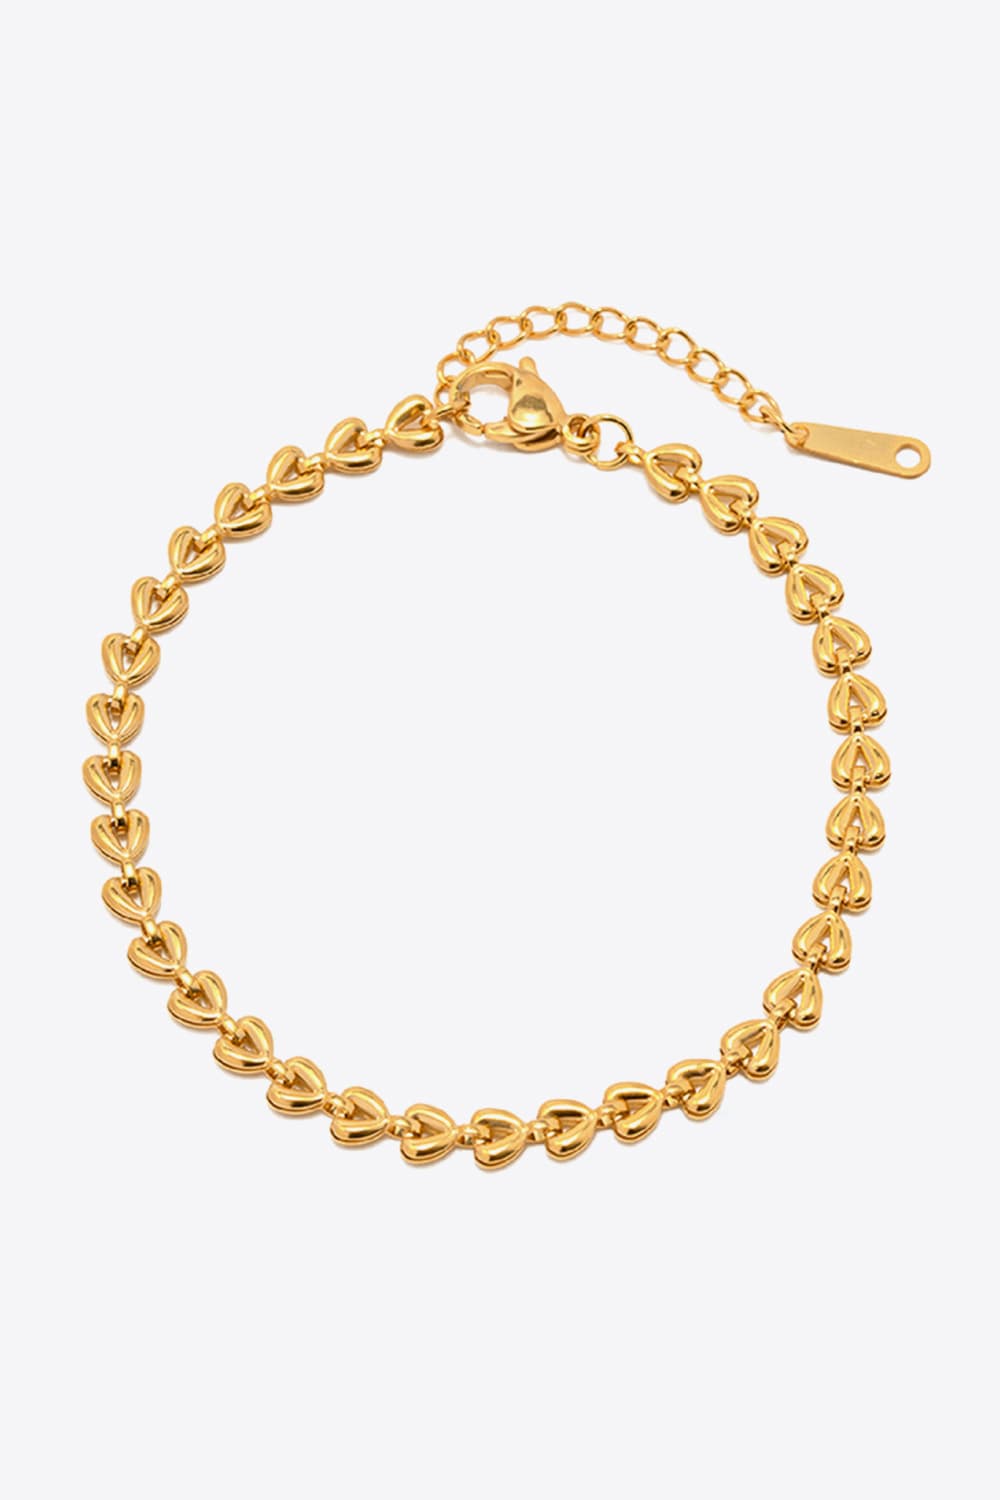 Heart Chain Lobster Clasp Bracelet - Gold / One Size - Women’s Jewelry - Bracelets - 1 - 2024